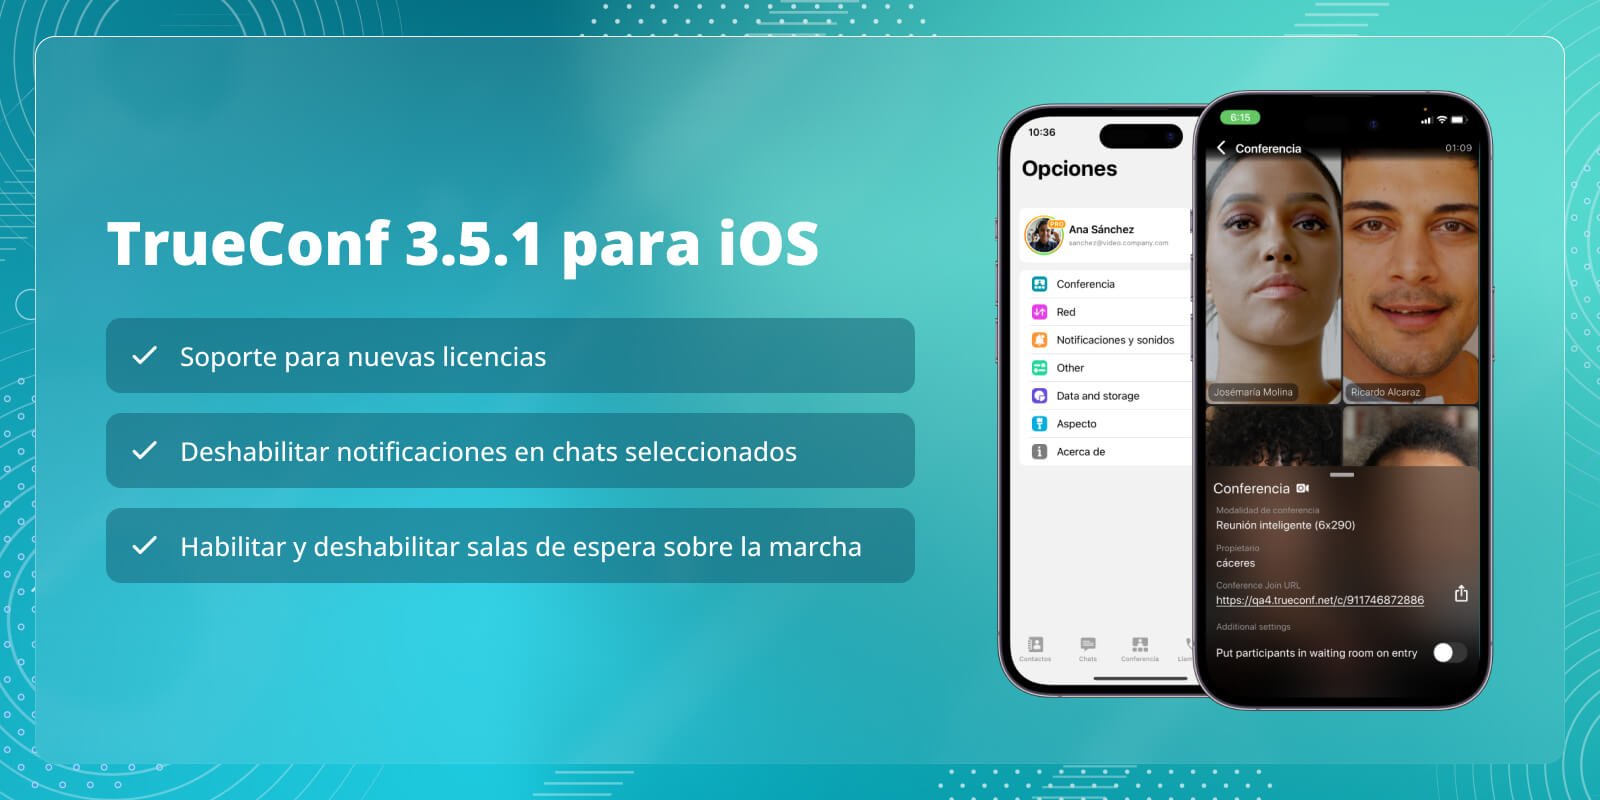 TrueConf 3.5.1 para iOS: soporte para nuevas licencias y silenciar los chats 1